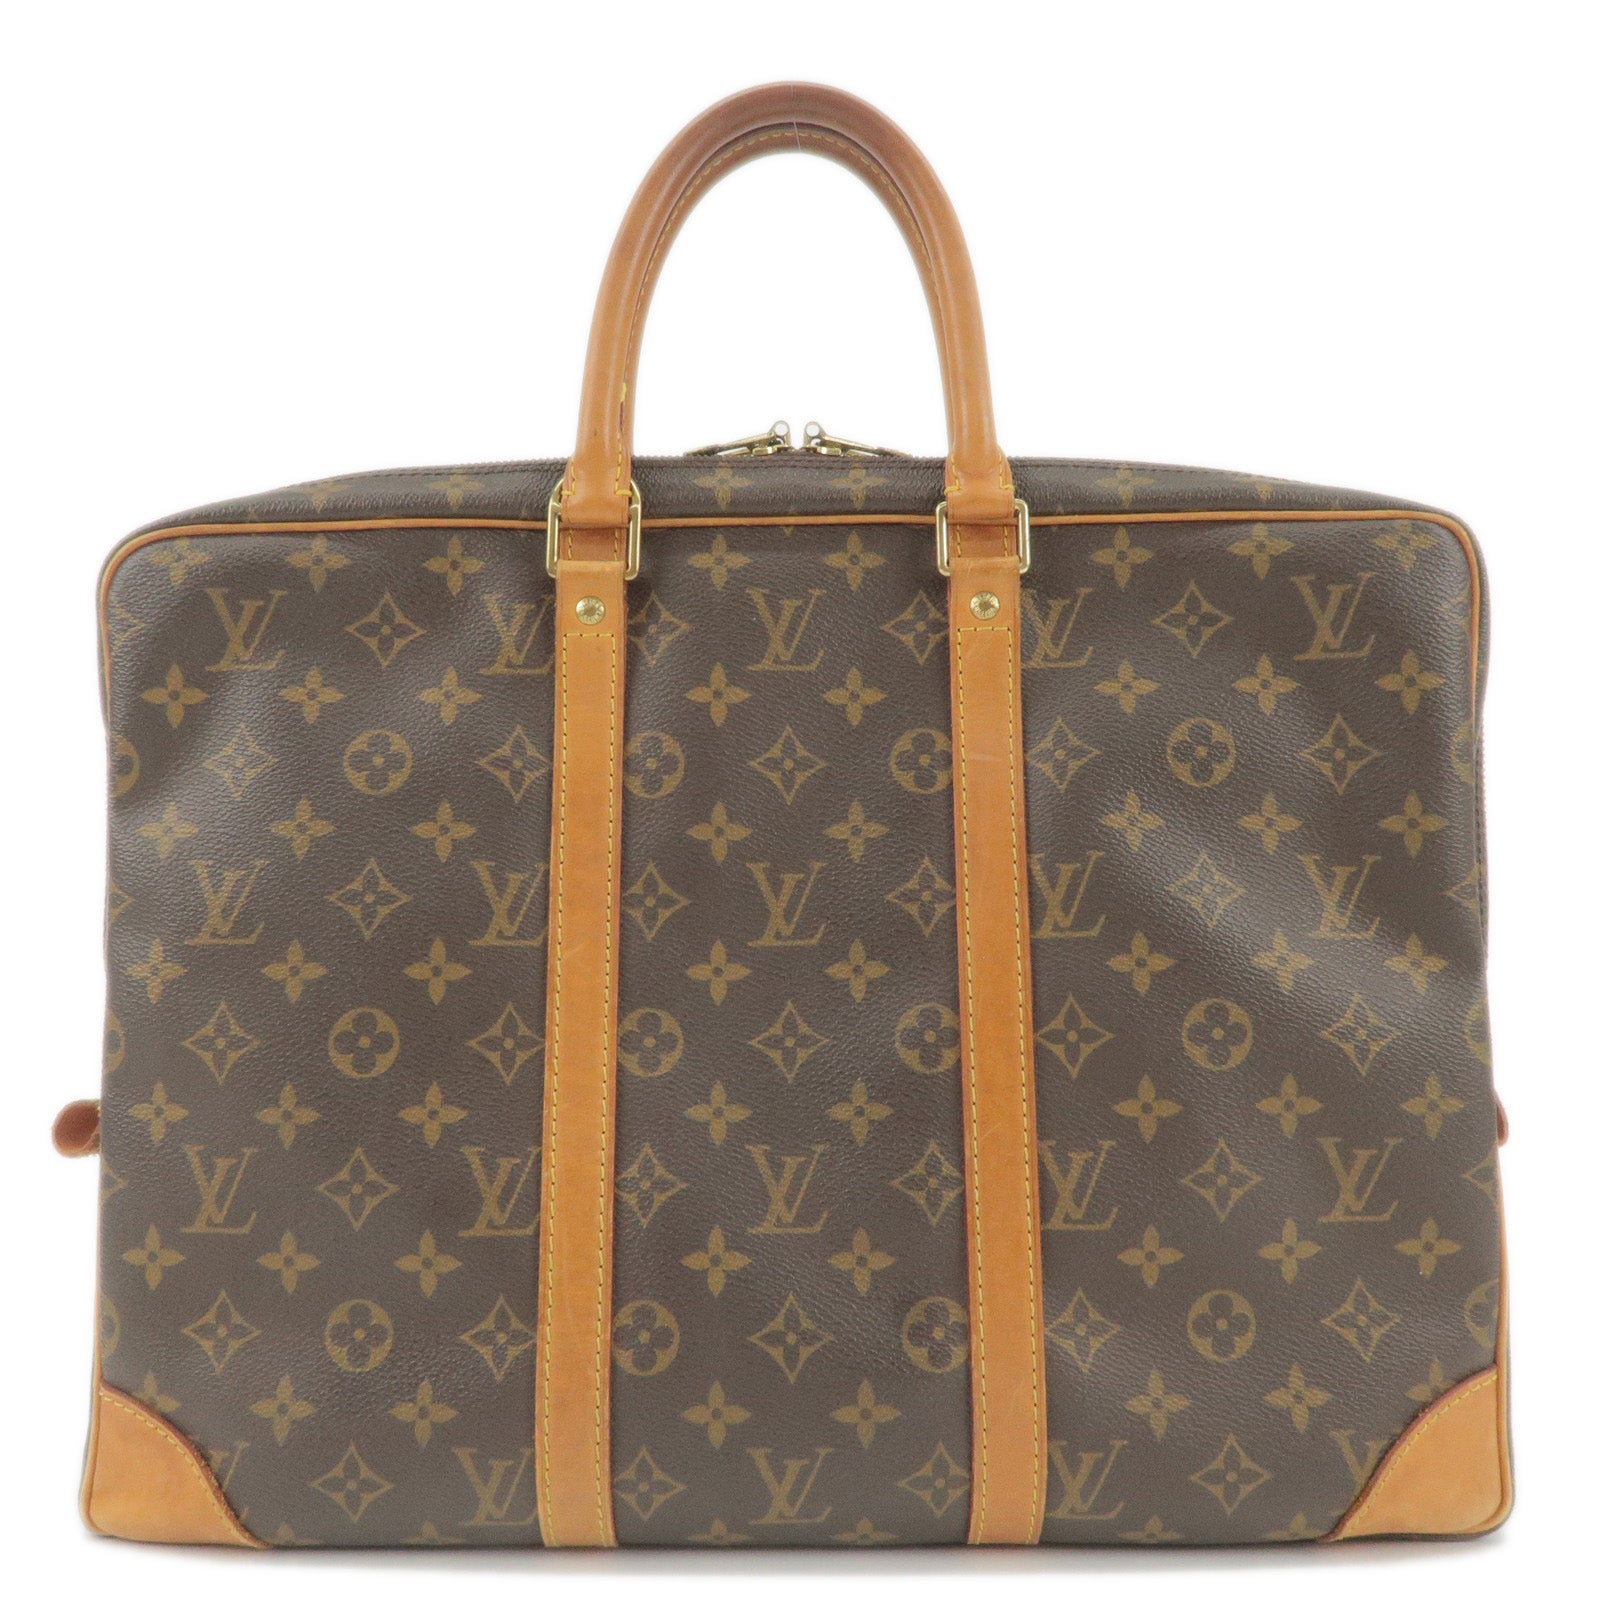 Authentic Louis Vuitton Monogram Business Bag Porte Documents Voyage M40226